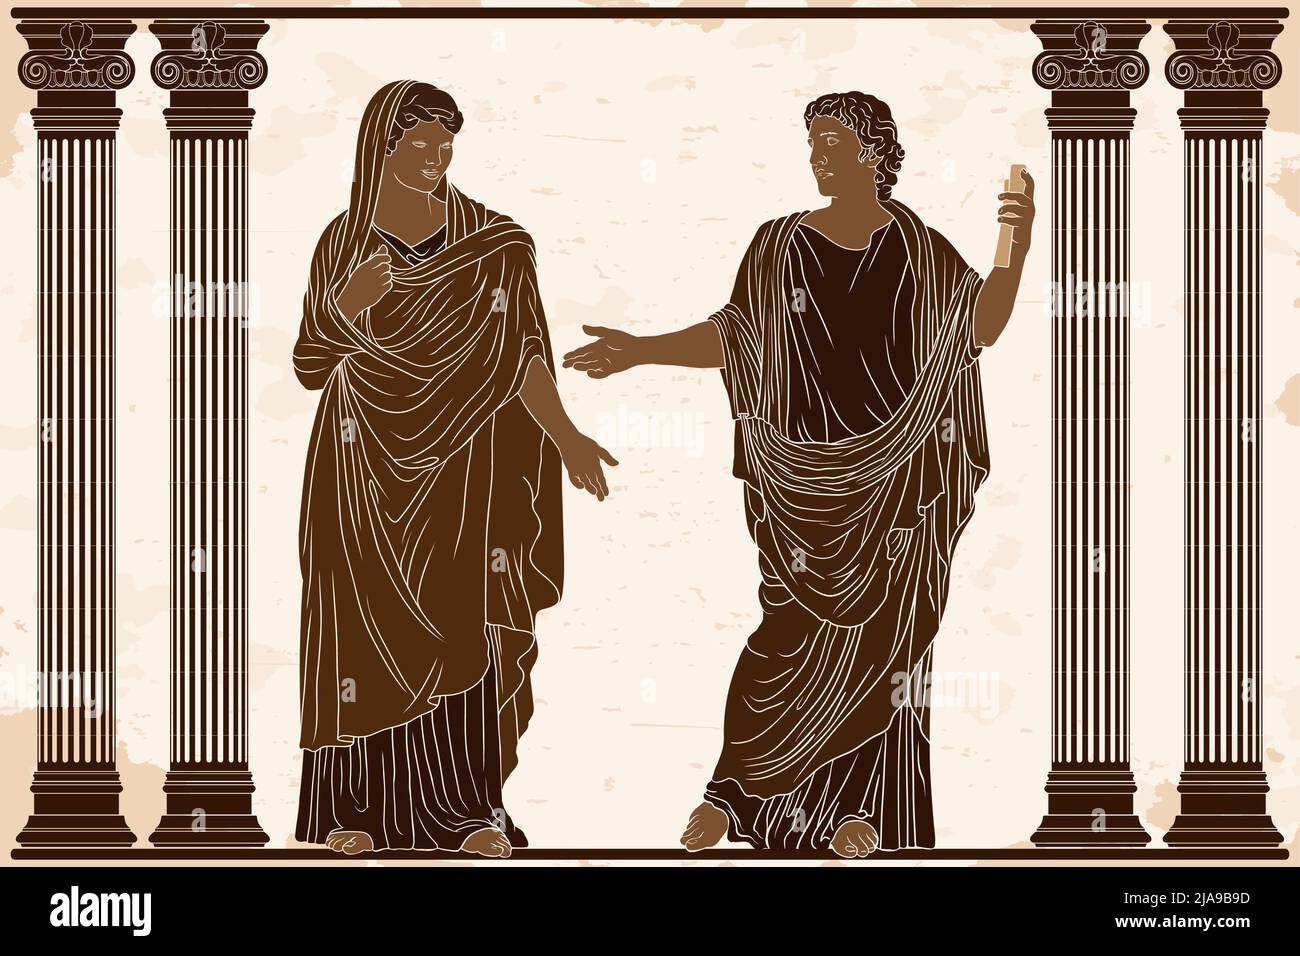 Un poète grec ancien avec un papyrus dans ses mains lit de la poésie pour une femme dans une tunique dans le temple entre les colonnes. Illustration de Vecteur